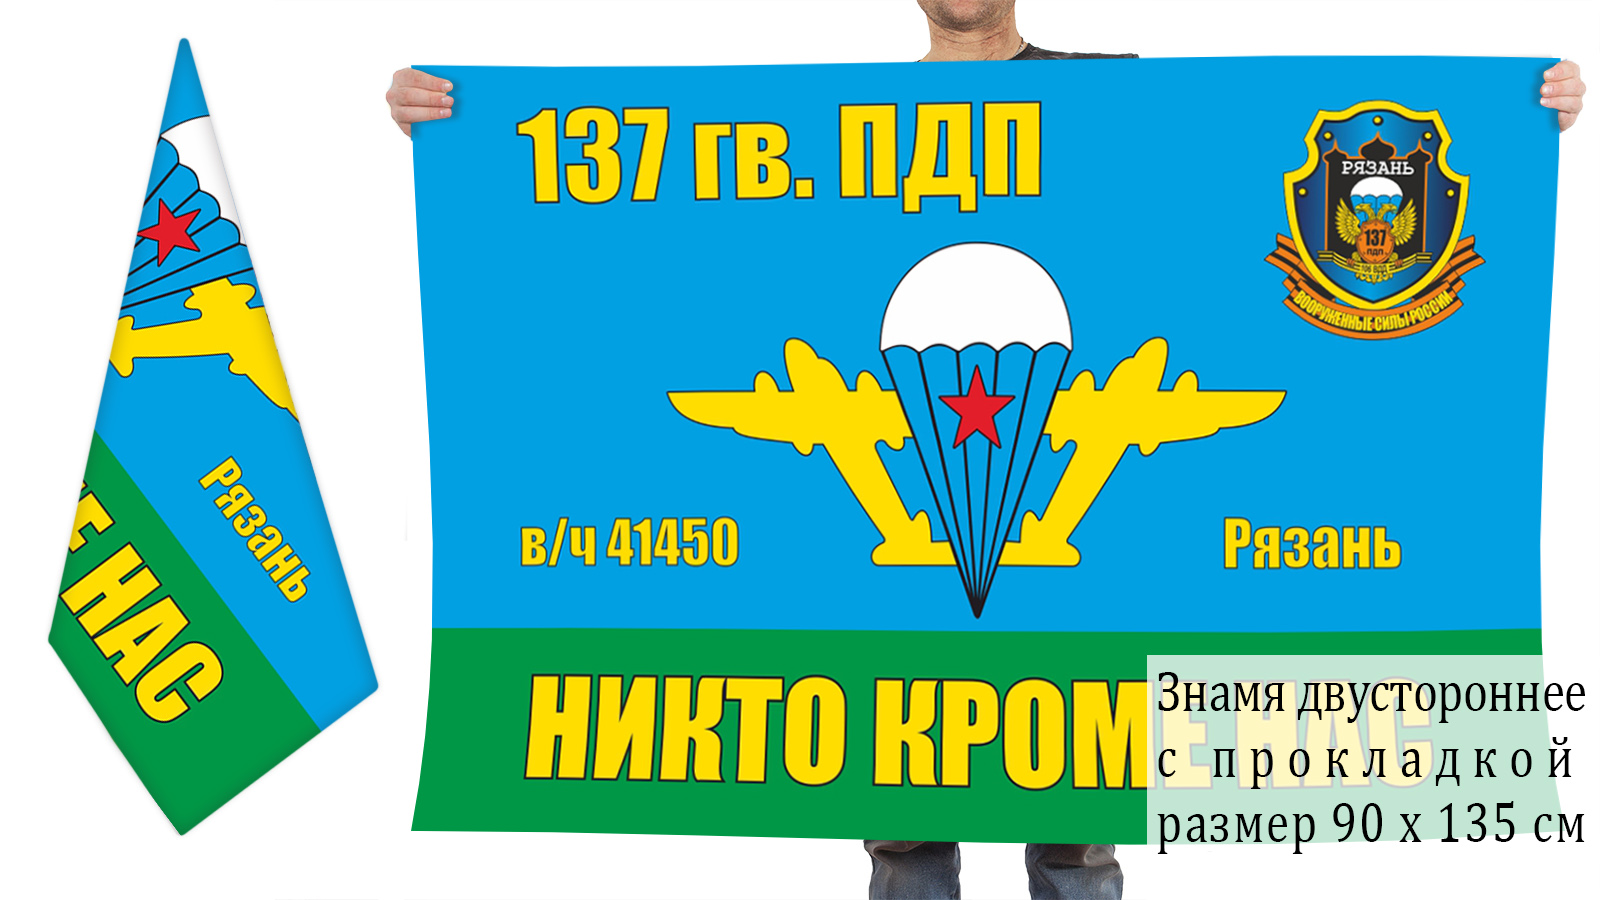 Двусторонний флаг 137 Гв. ПДП